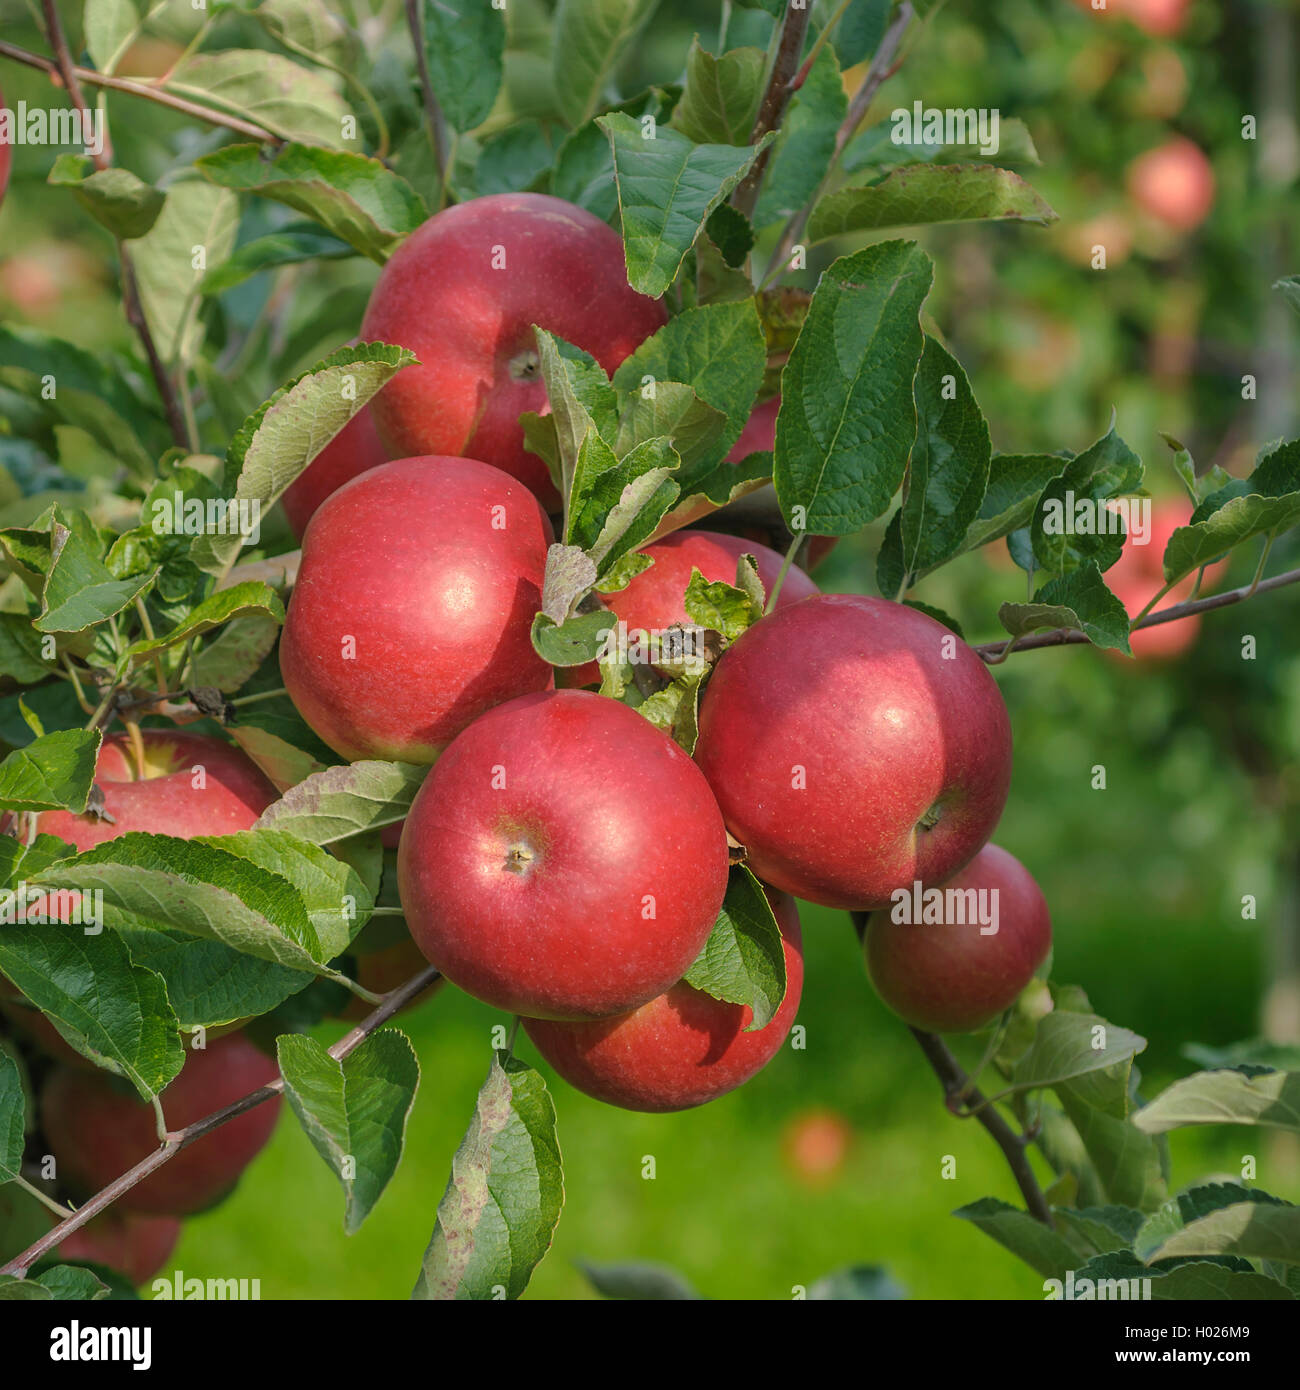 apple (Malus domestica 'Idared', Malus domestica Idared), cultivar Idared Stock Photo